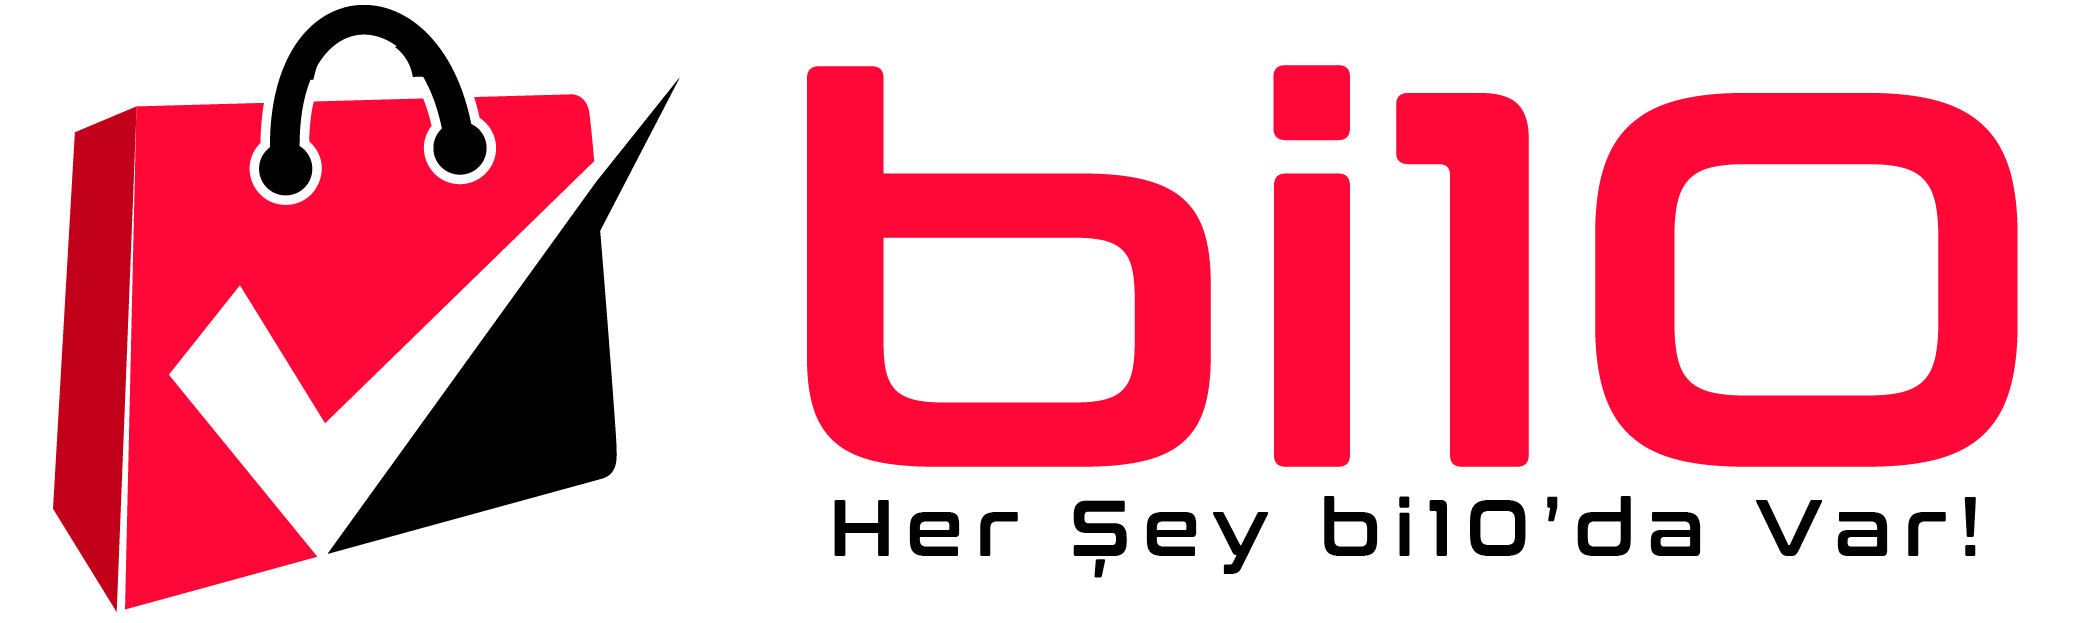 bi10